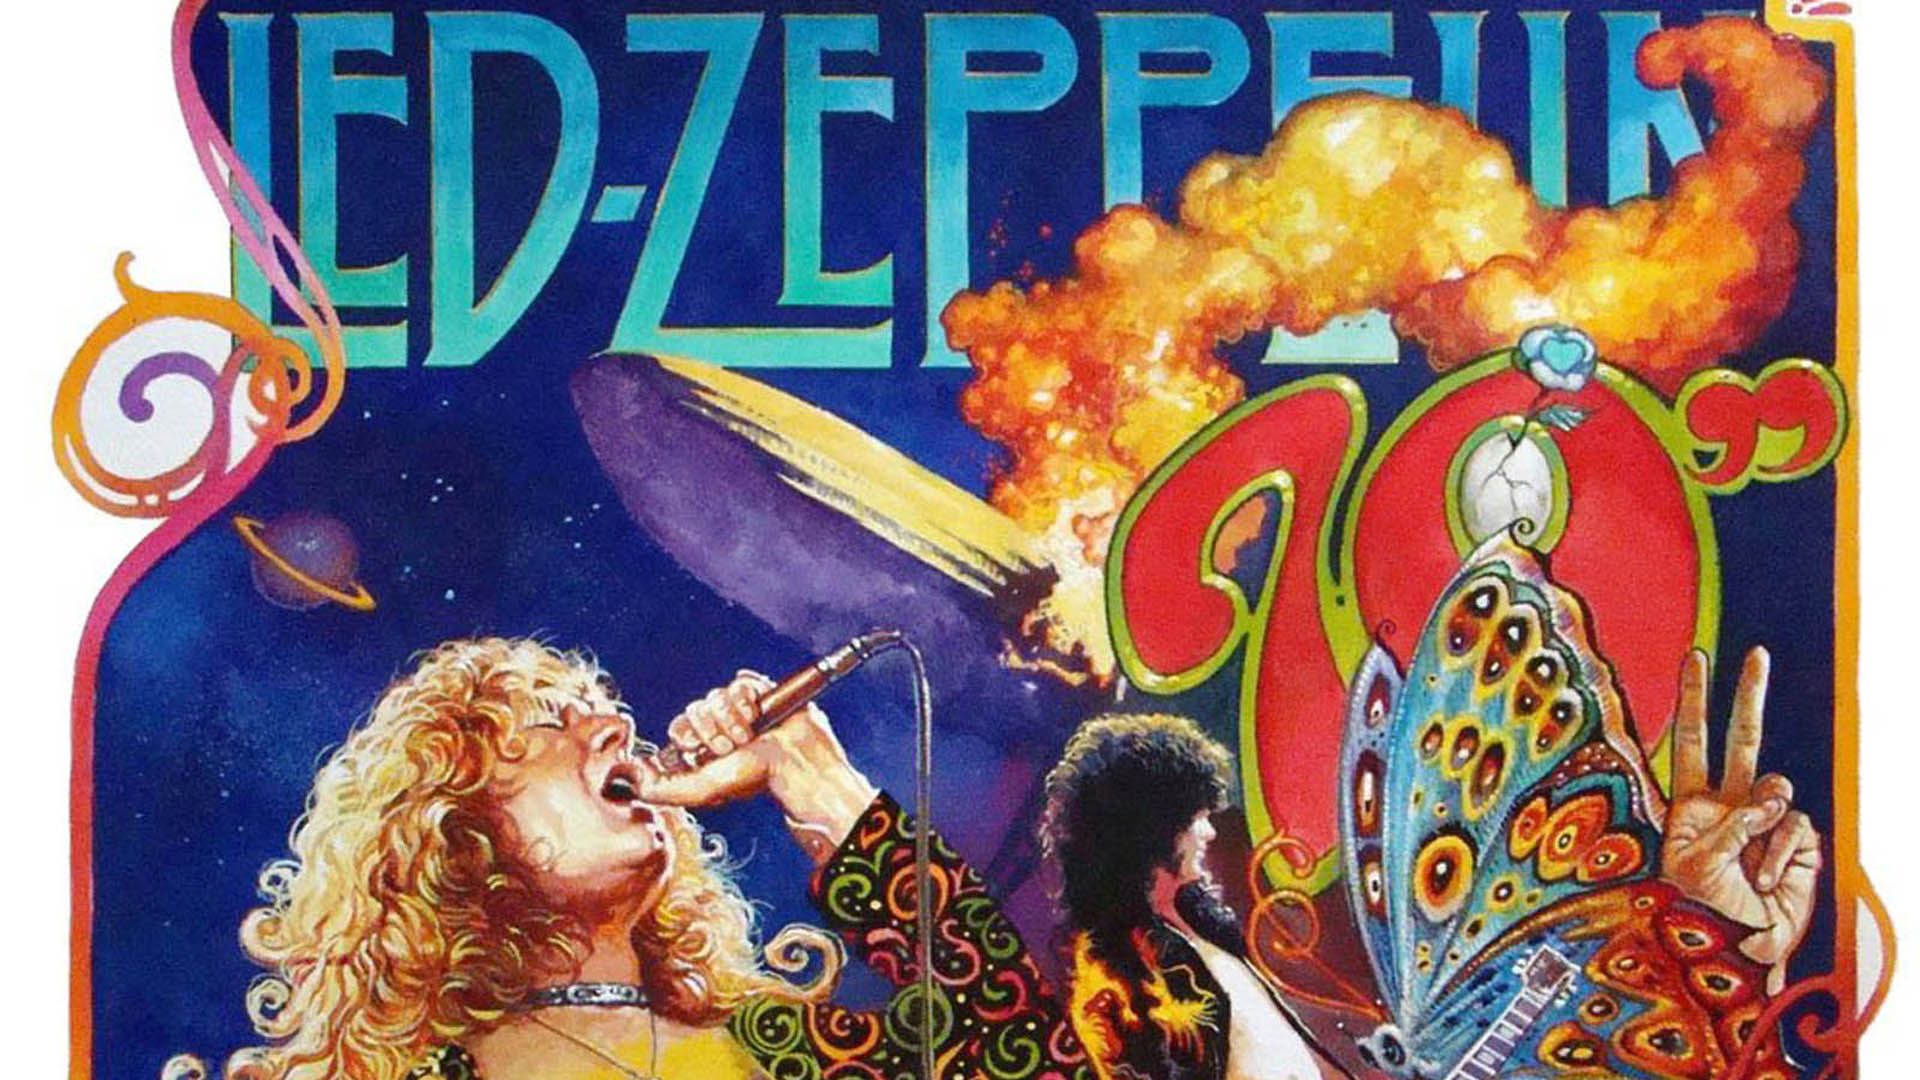 Led Zeppelin Album 1920x1080 Wallpapers, 1920x1080 Wallpapers ...